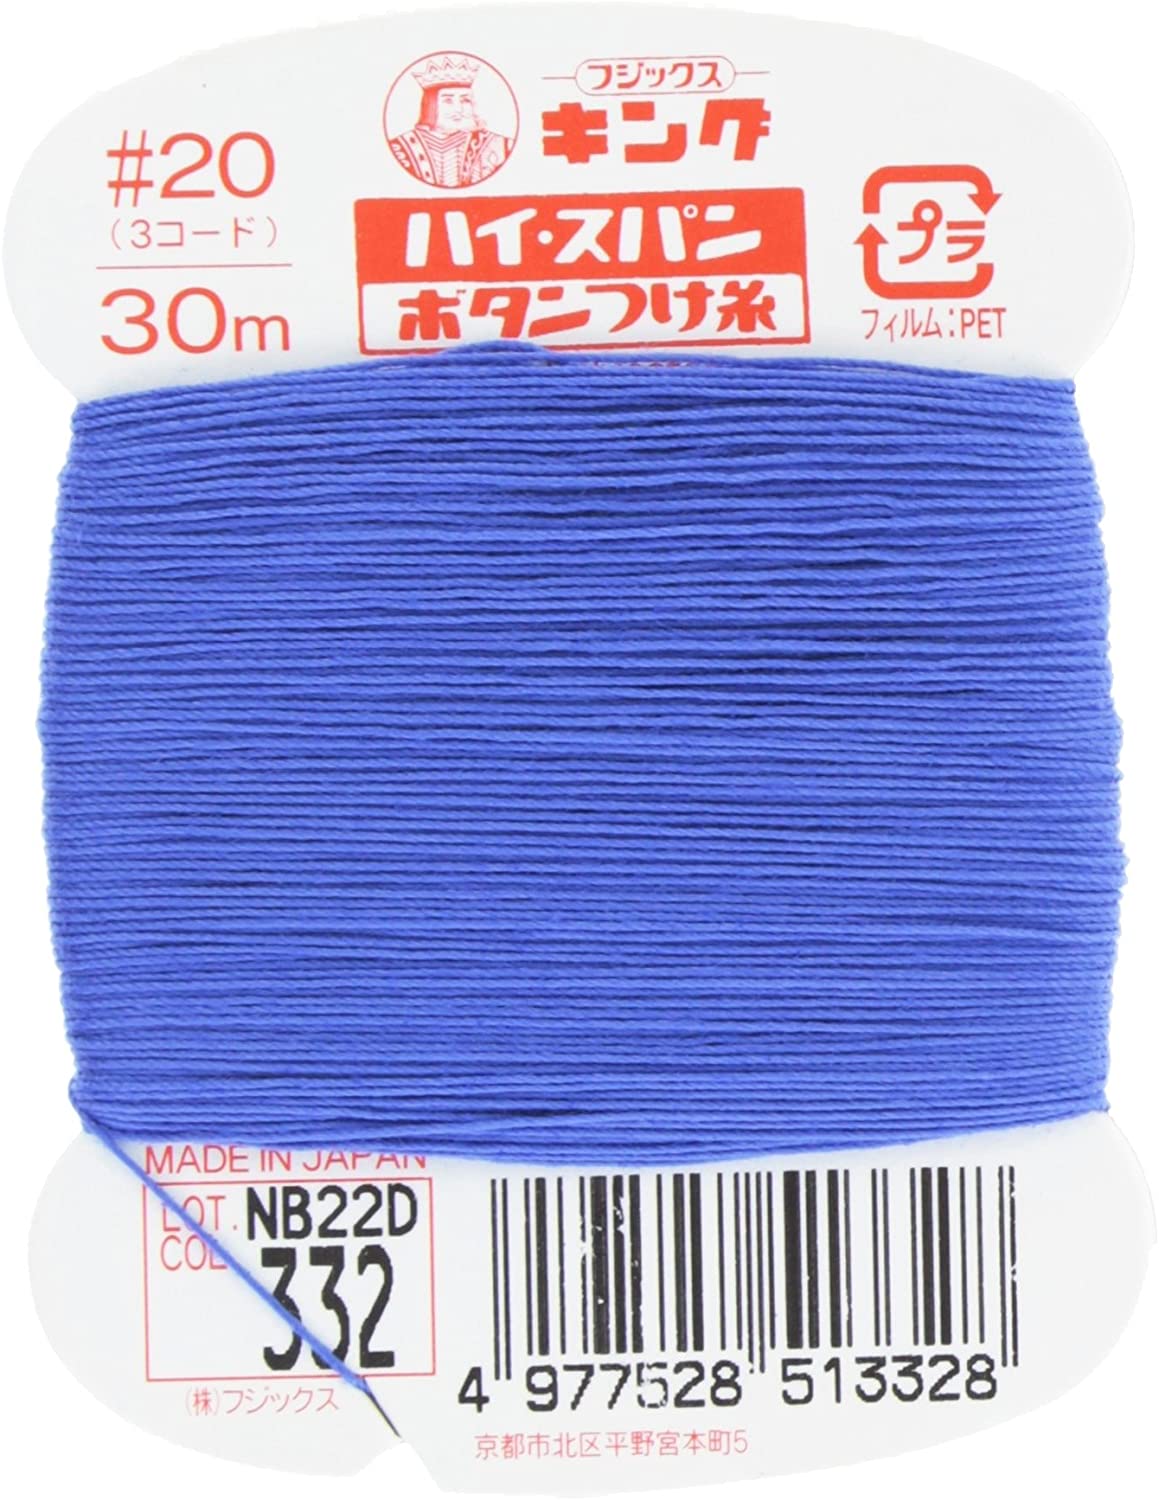 FK51-332 ハイスパンボタンつけ糸 #20 30m巻 (枚)